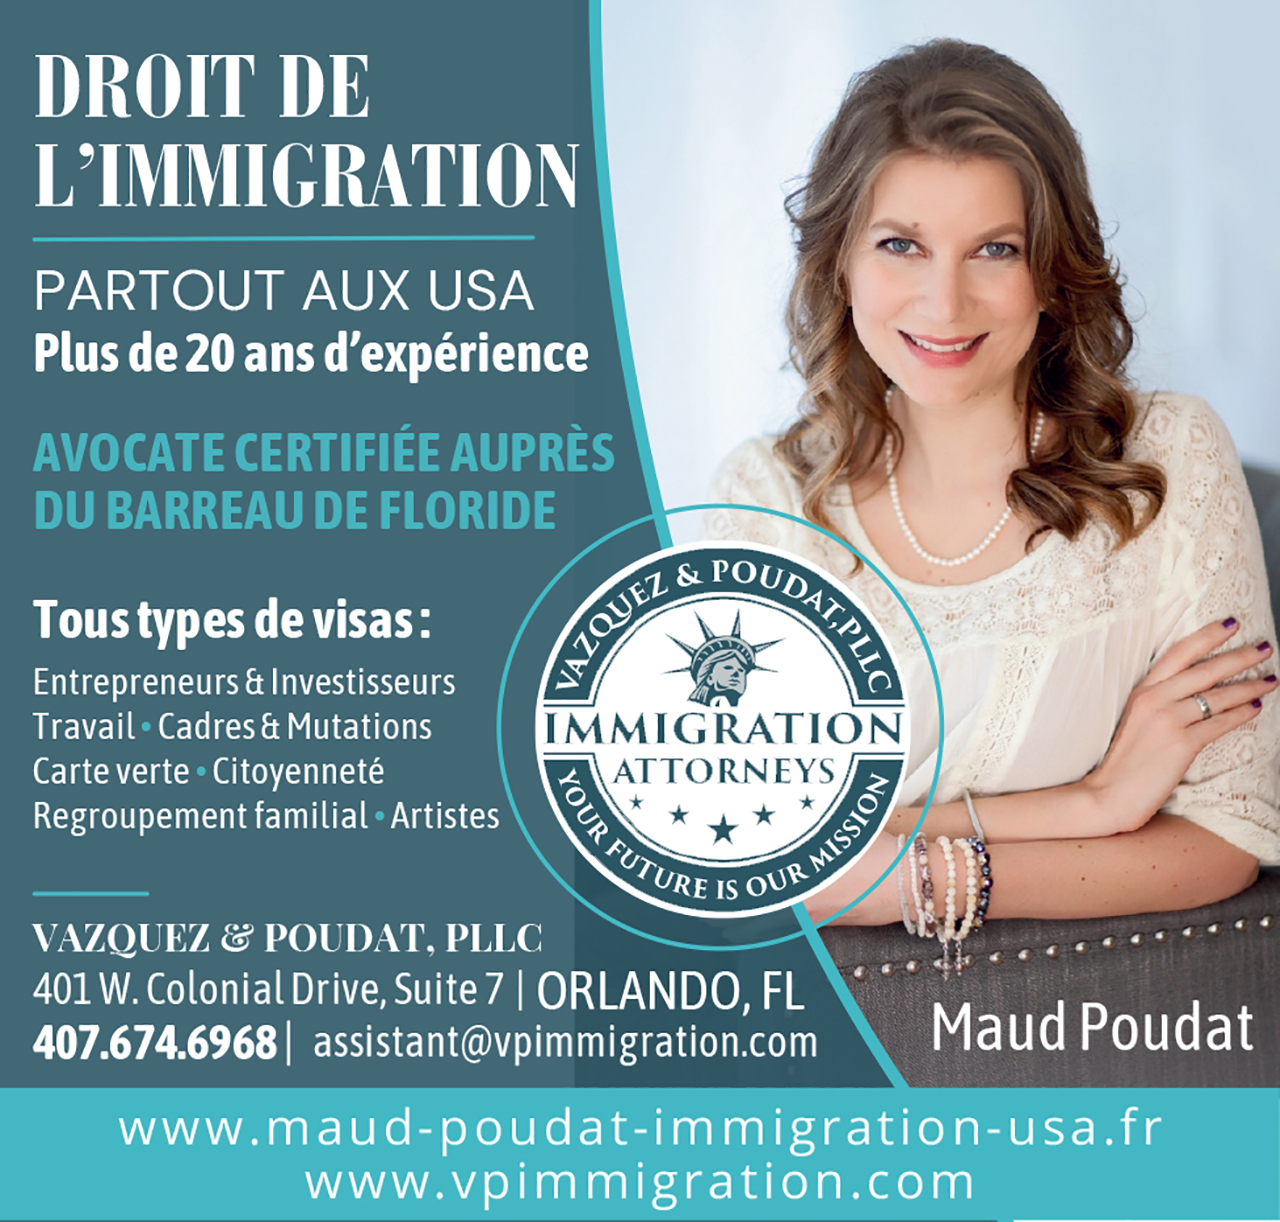 Maud Poudat Avocate d'immigration aux Etats-Unis